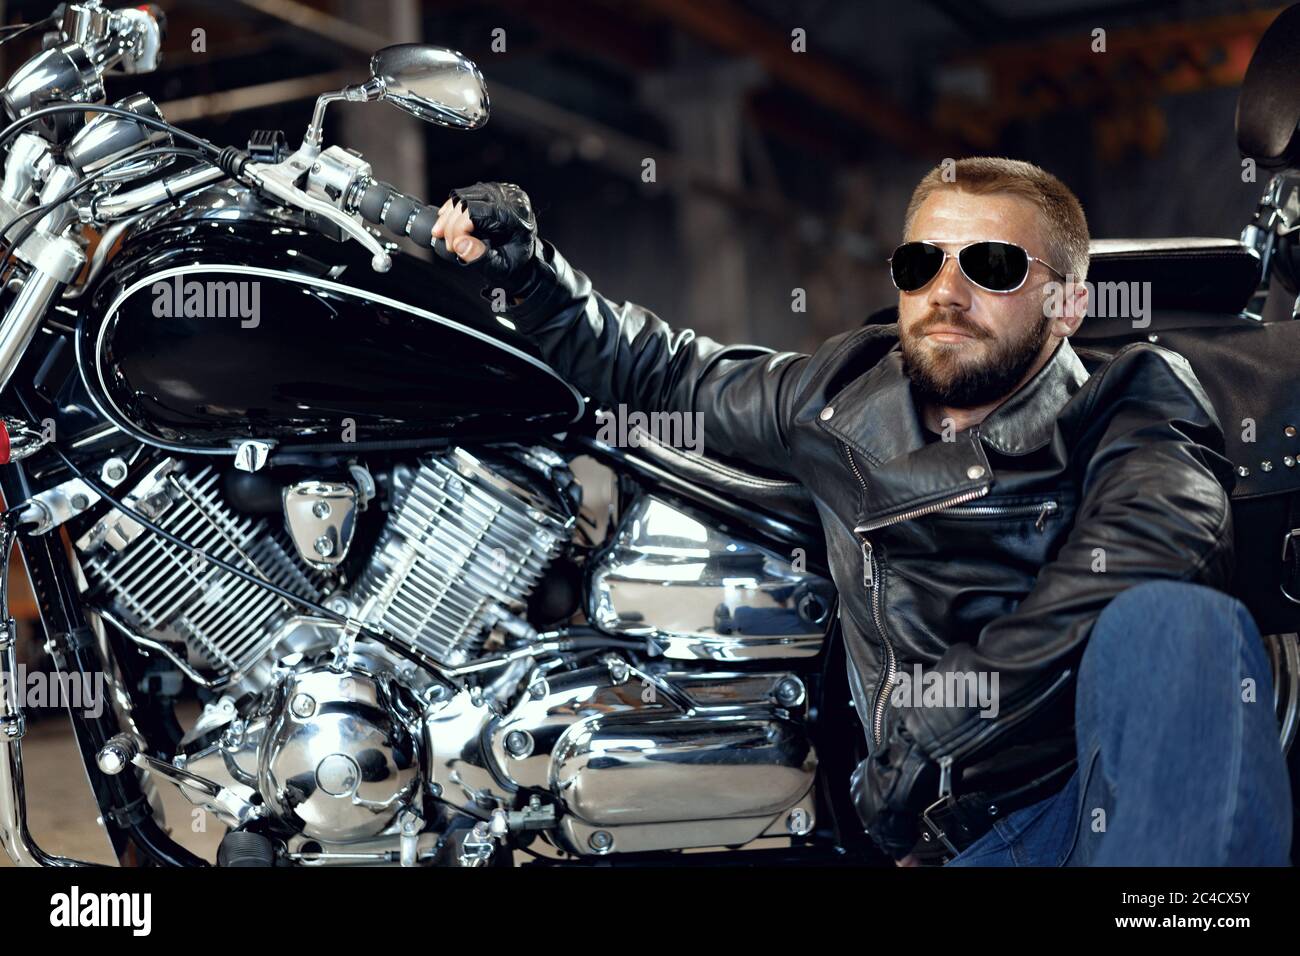 Cooler Mann Biker in Sonnenbrille sitzt neben seinem Motorrad  Stockfotografie - Alamy